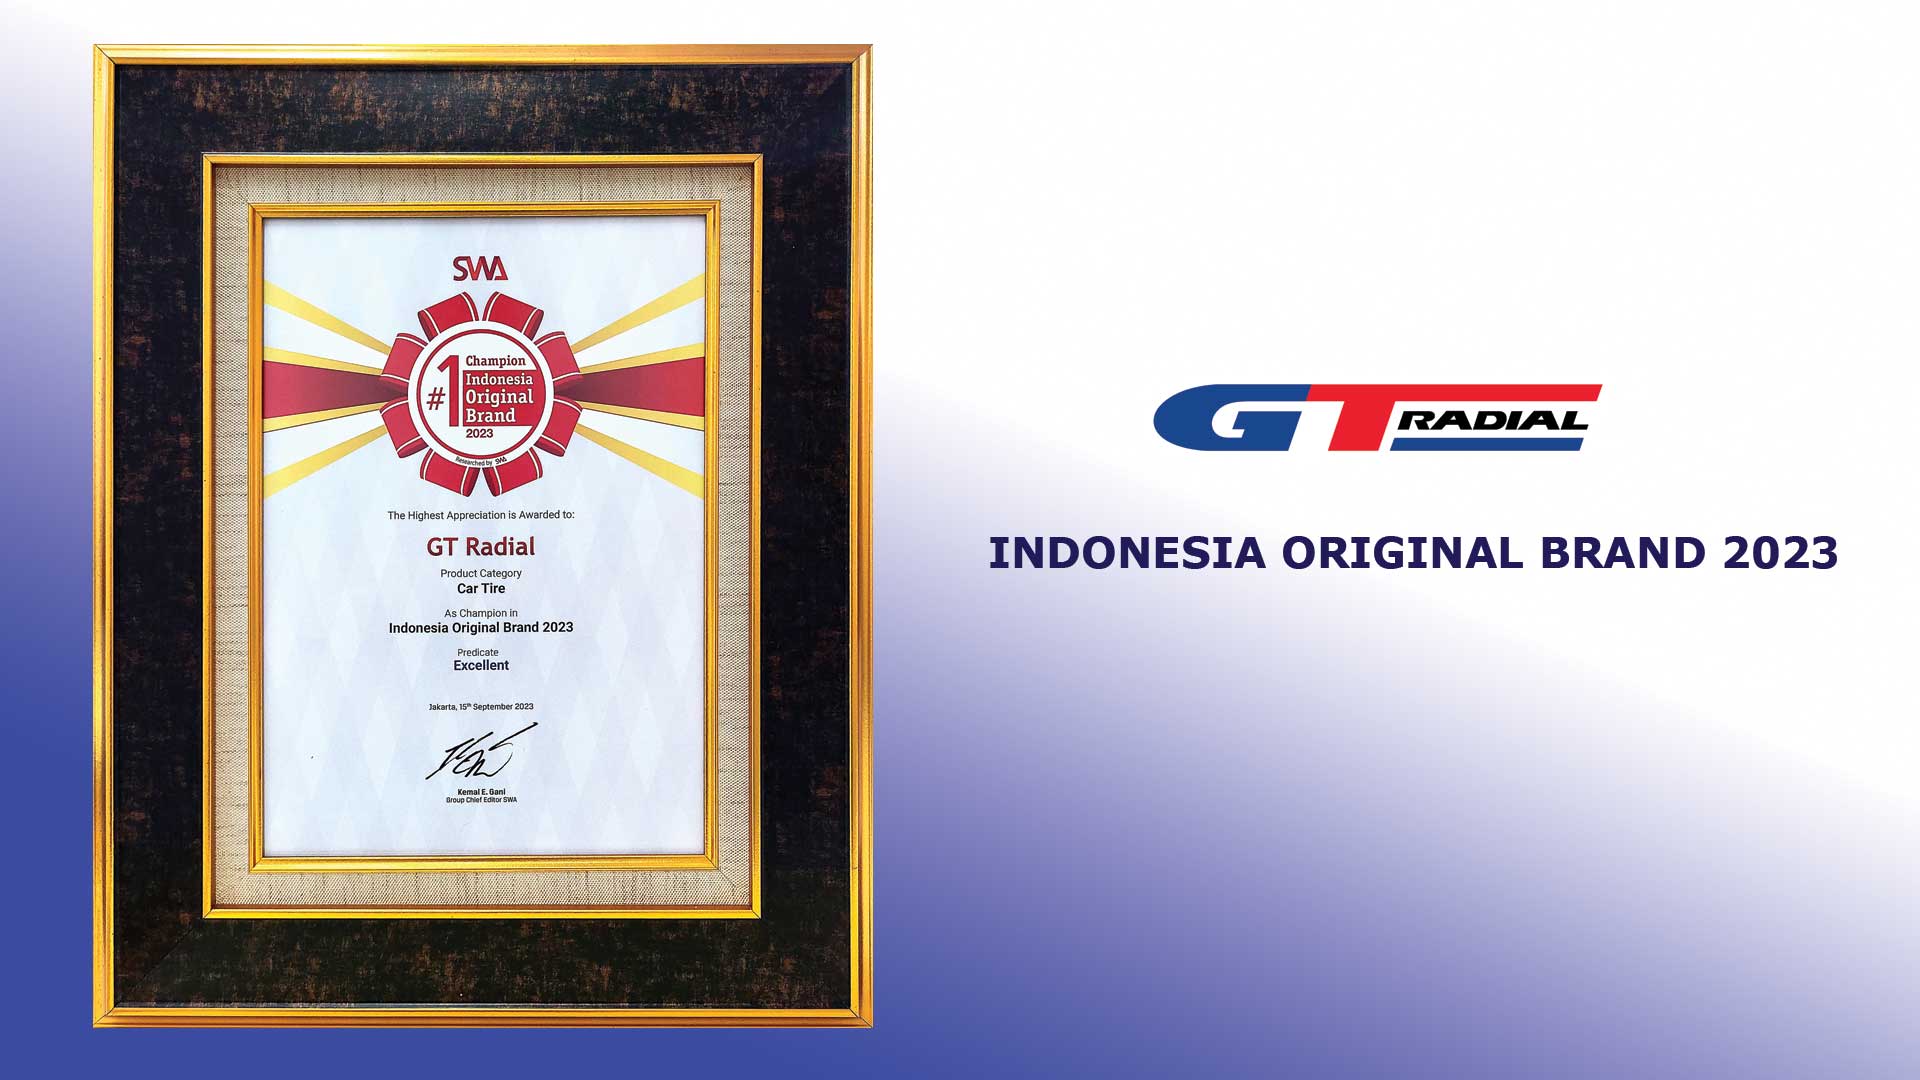 GT Radial Raih Indonesia Original Brand Award dari SWA 2023, Sebuah Bukti Otentisitas dan Keunggulan